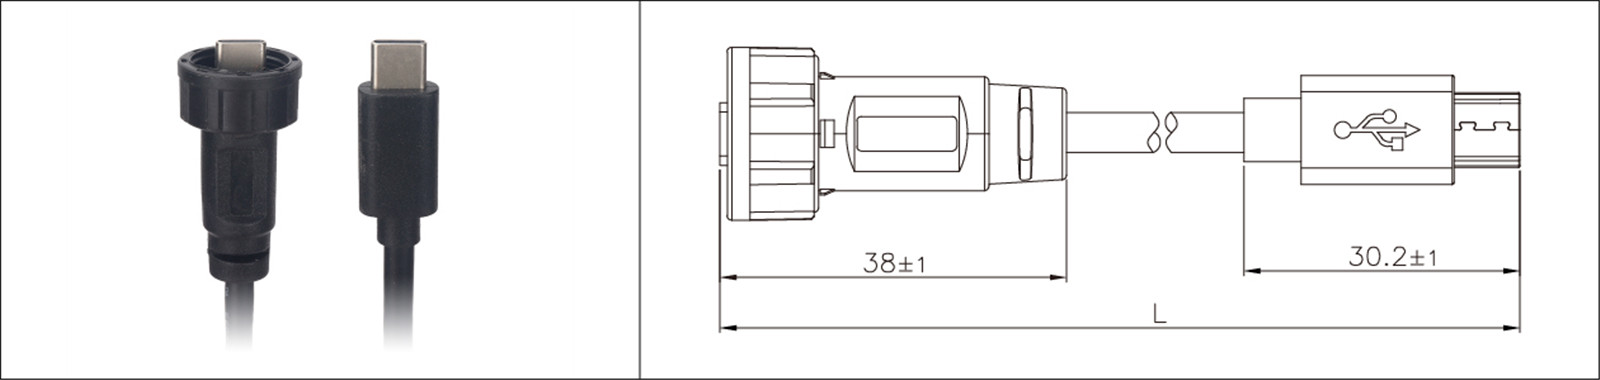 Micro USB montaggio a pannello tipo 2.0 3.0 femmina e maschio impermeabile IP67 cavo di prolunga sovrastampato connettore industriale-02 (7)